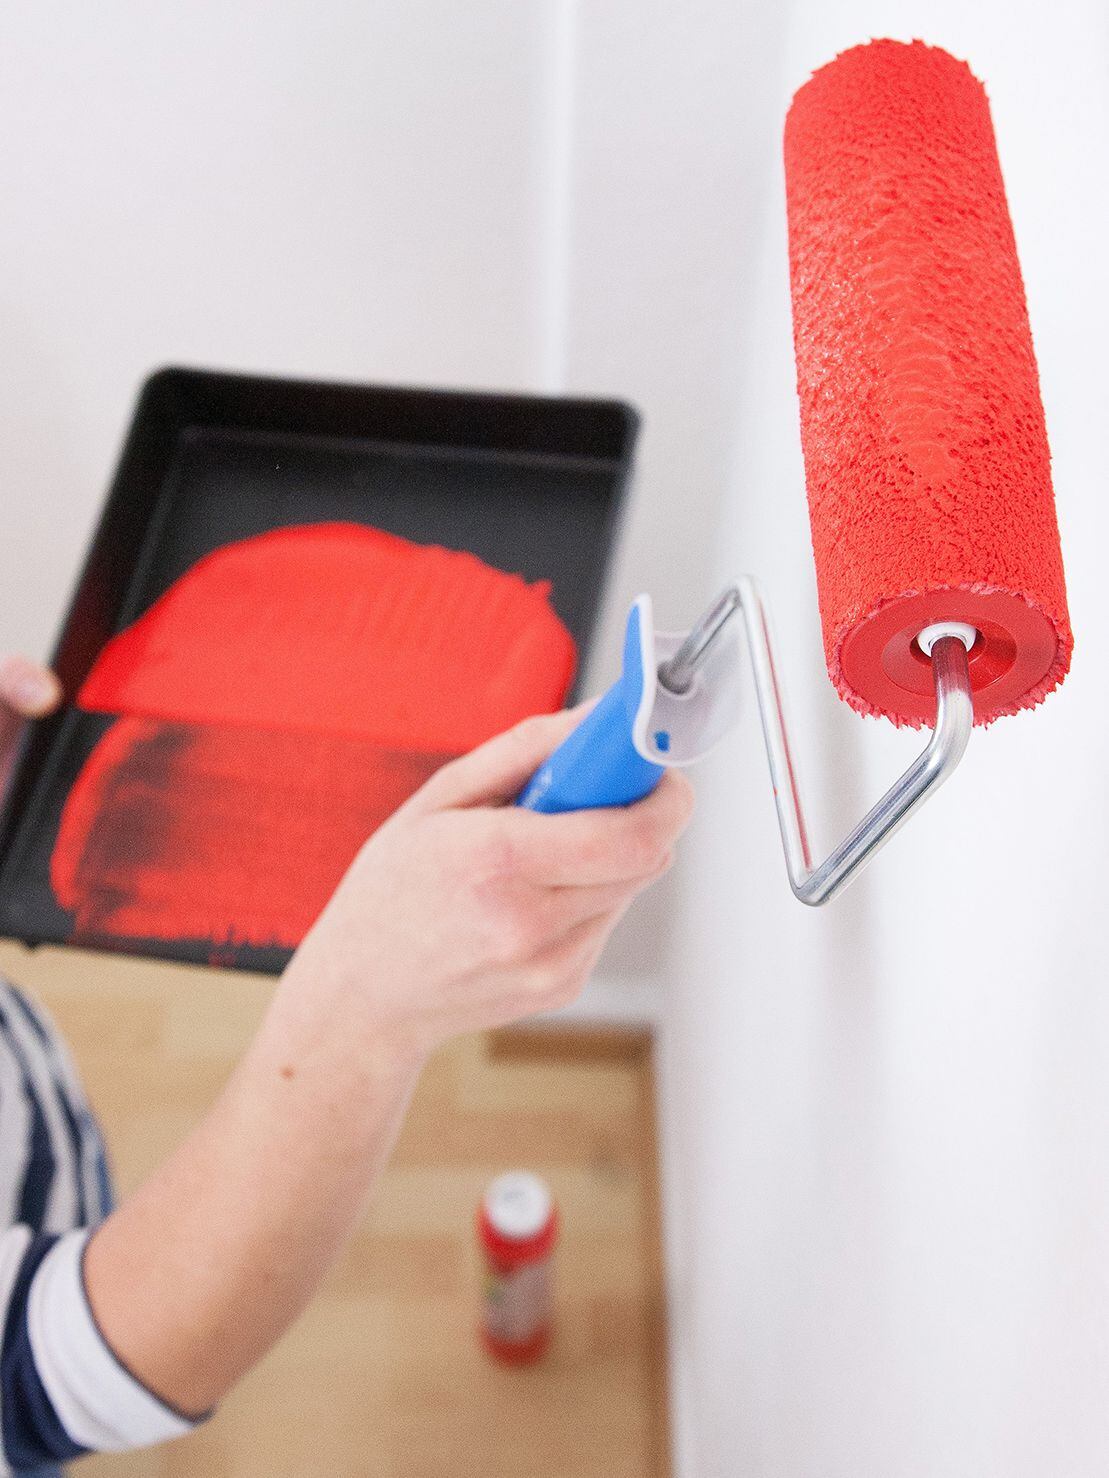 Vale la pena animarse a darle color a las paredes. Pero el rojo lleva a una mayor excitación, no es el más apropiado para un espacio de reposo. (Agencia: DPA)